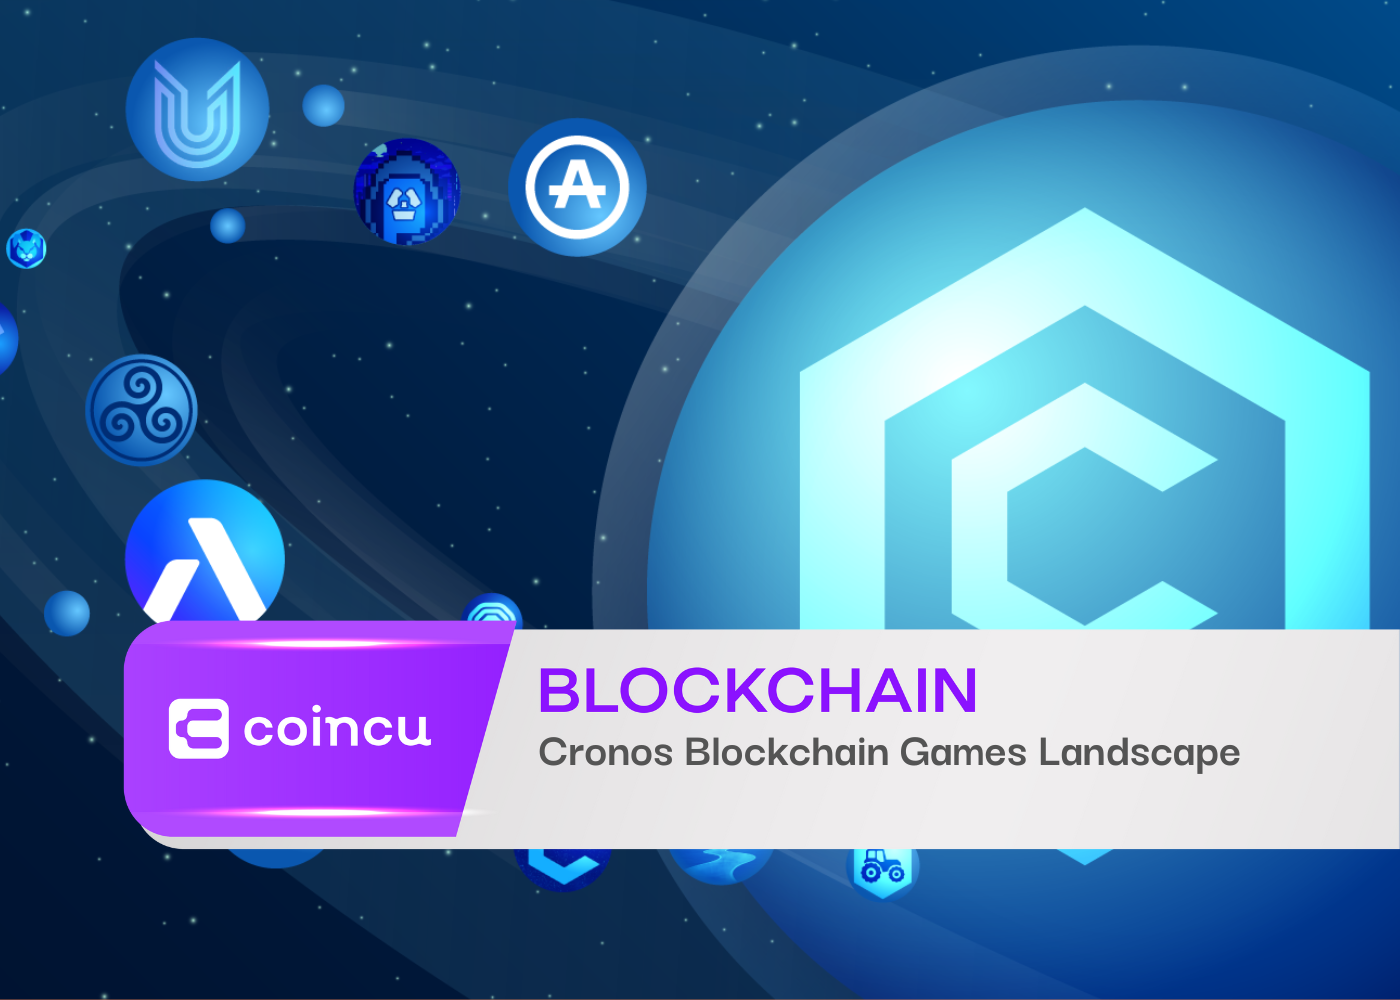 Cronos Blockchain Games Landscape